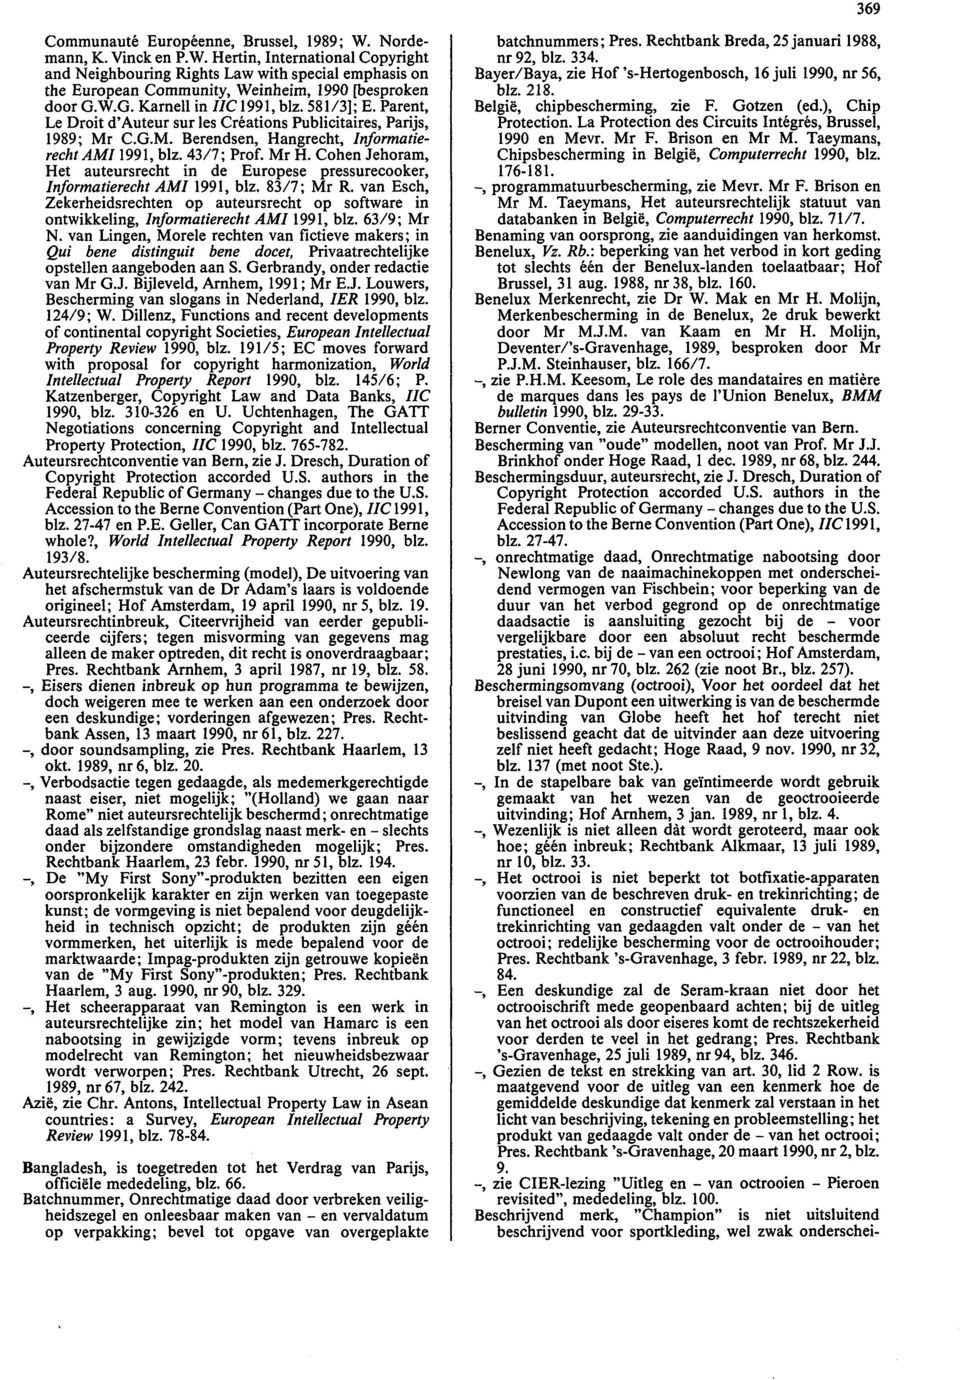 Cohen Jehoram, Het auteursrecht in de Europese pressurecooker, Informatierecht AMI 1991, blz. 83/7; Mr R.